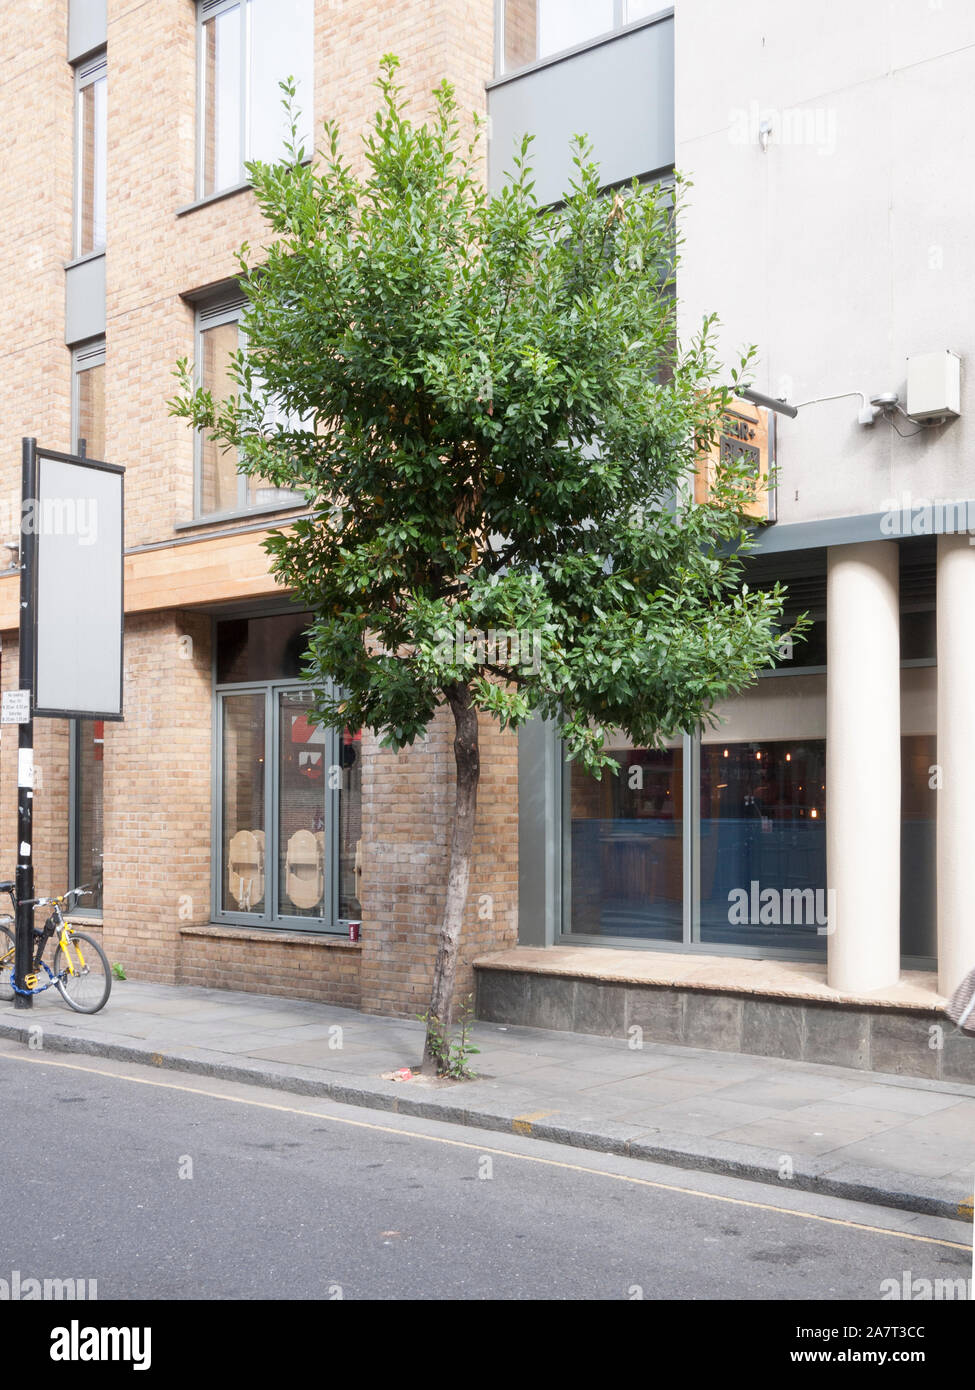 Bay tree (Laurus nobilis) used as a street tree, Kings Cross, London N1C Stock Photo